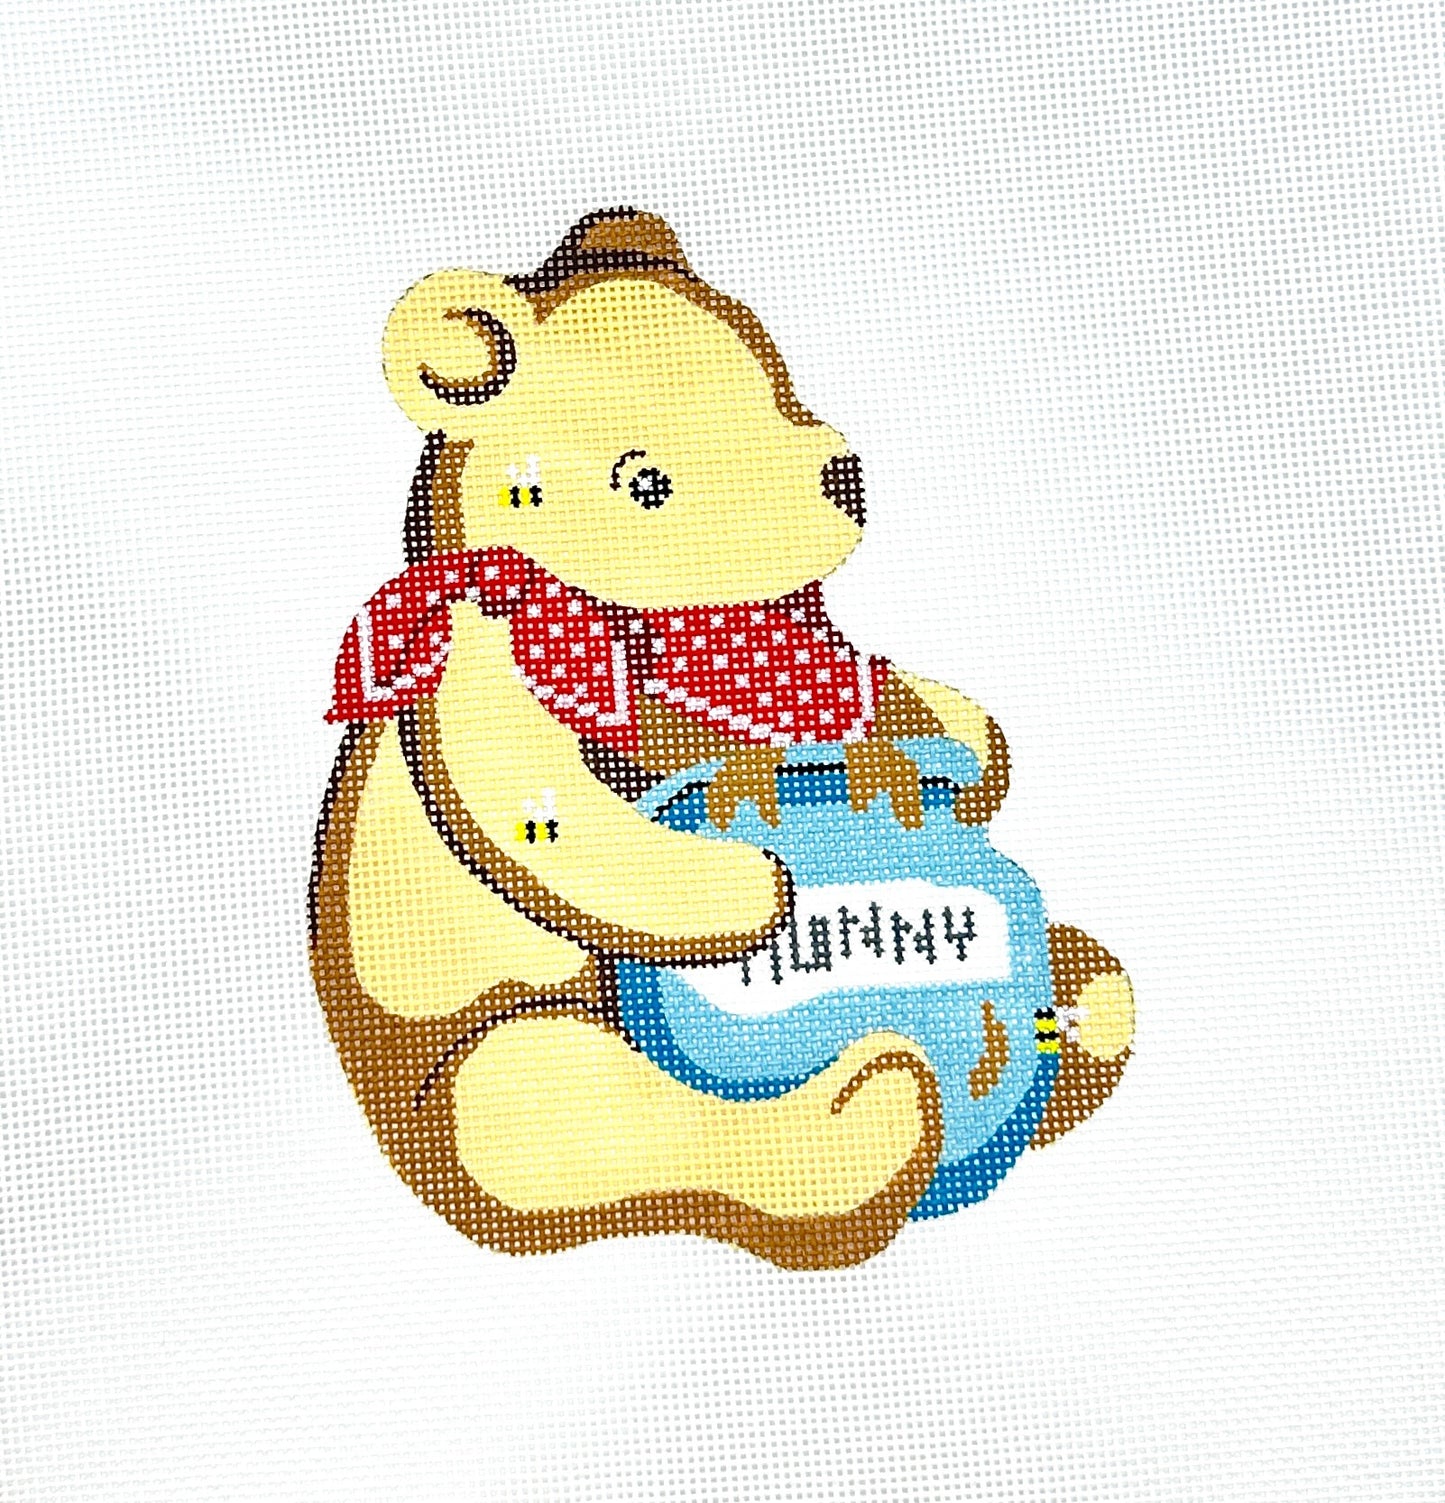 Pooh Bear in the Hunny Pot